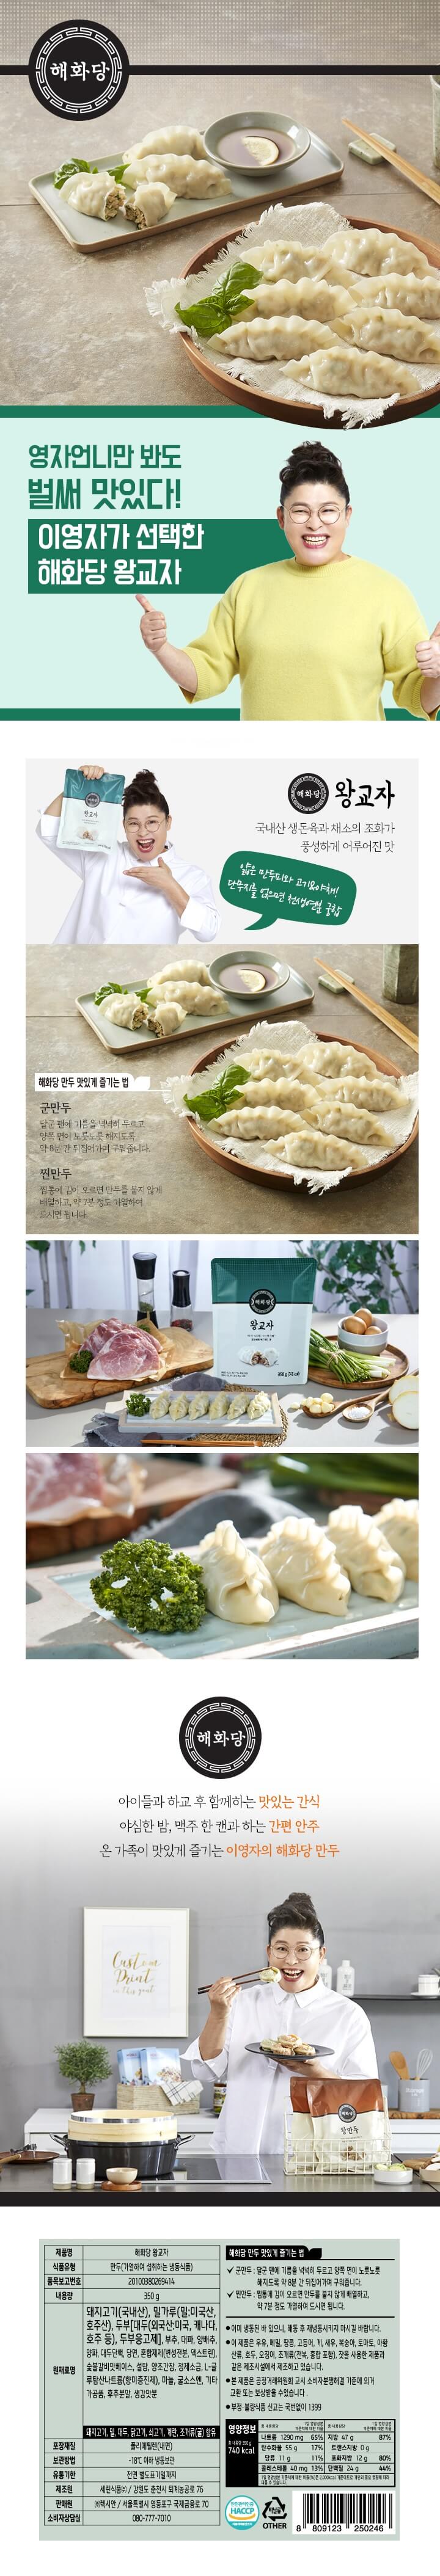 韓國食品-[Haewhadang] Dumpling 350g